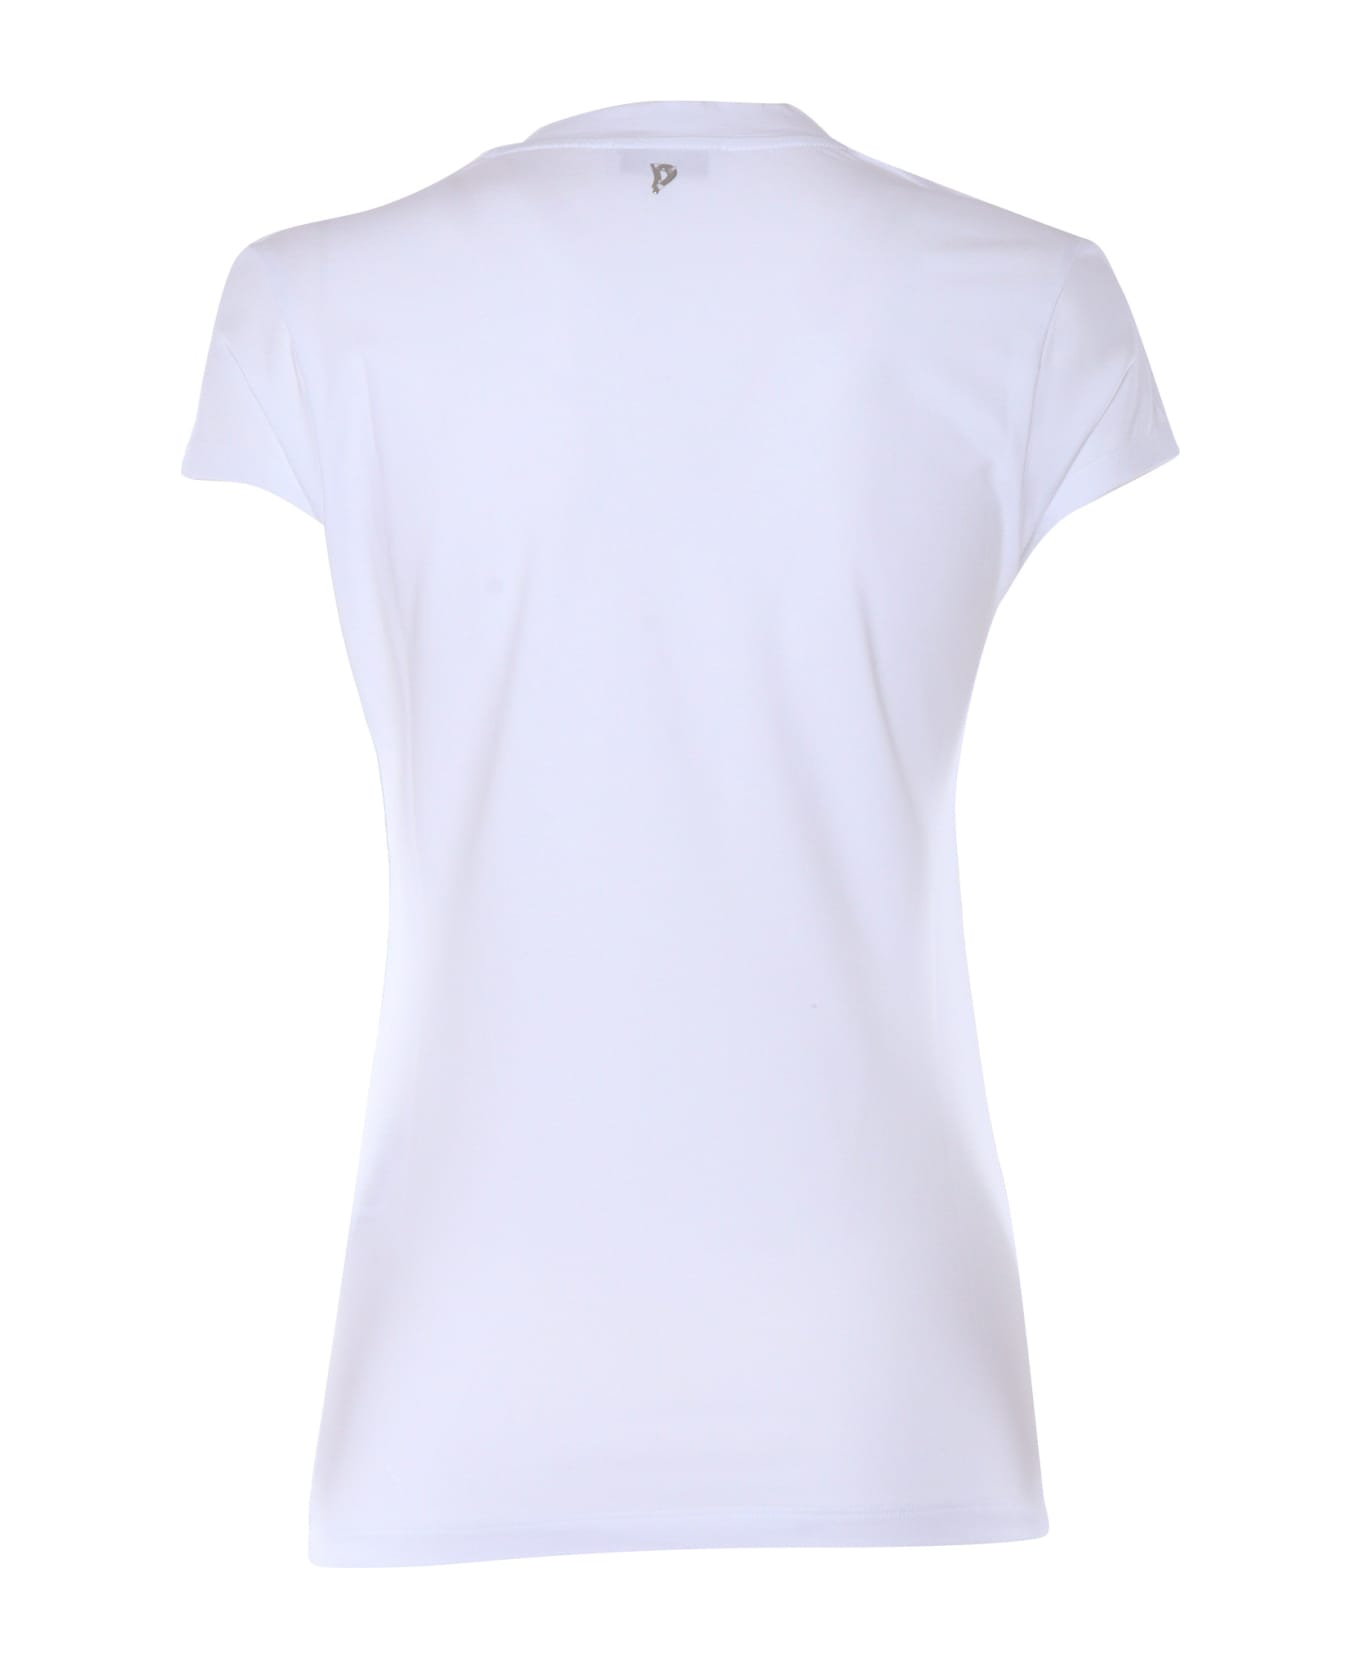 Dondup White T-shirt - White Tシャツ